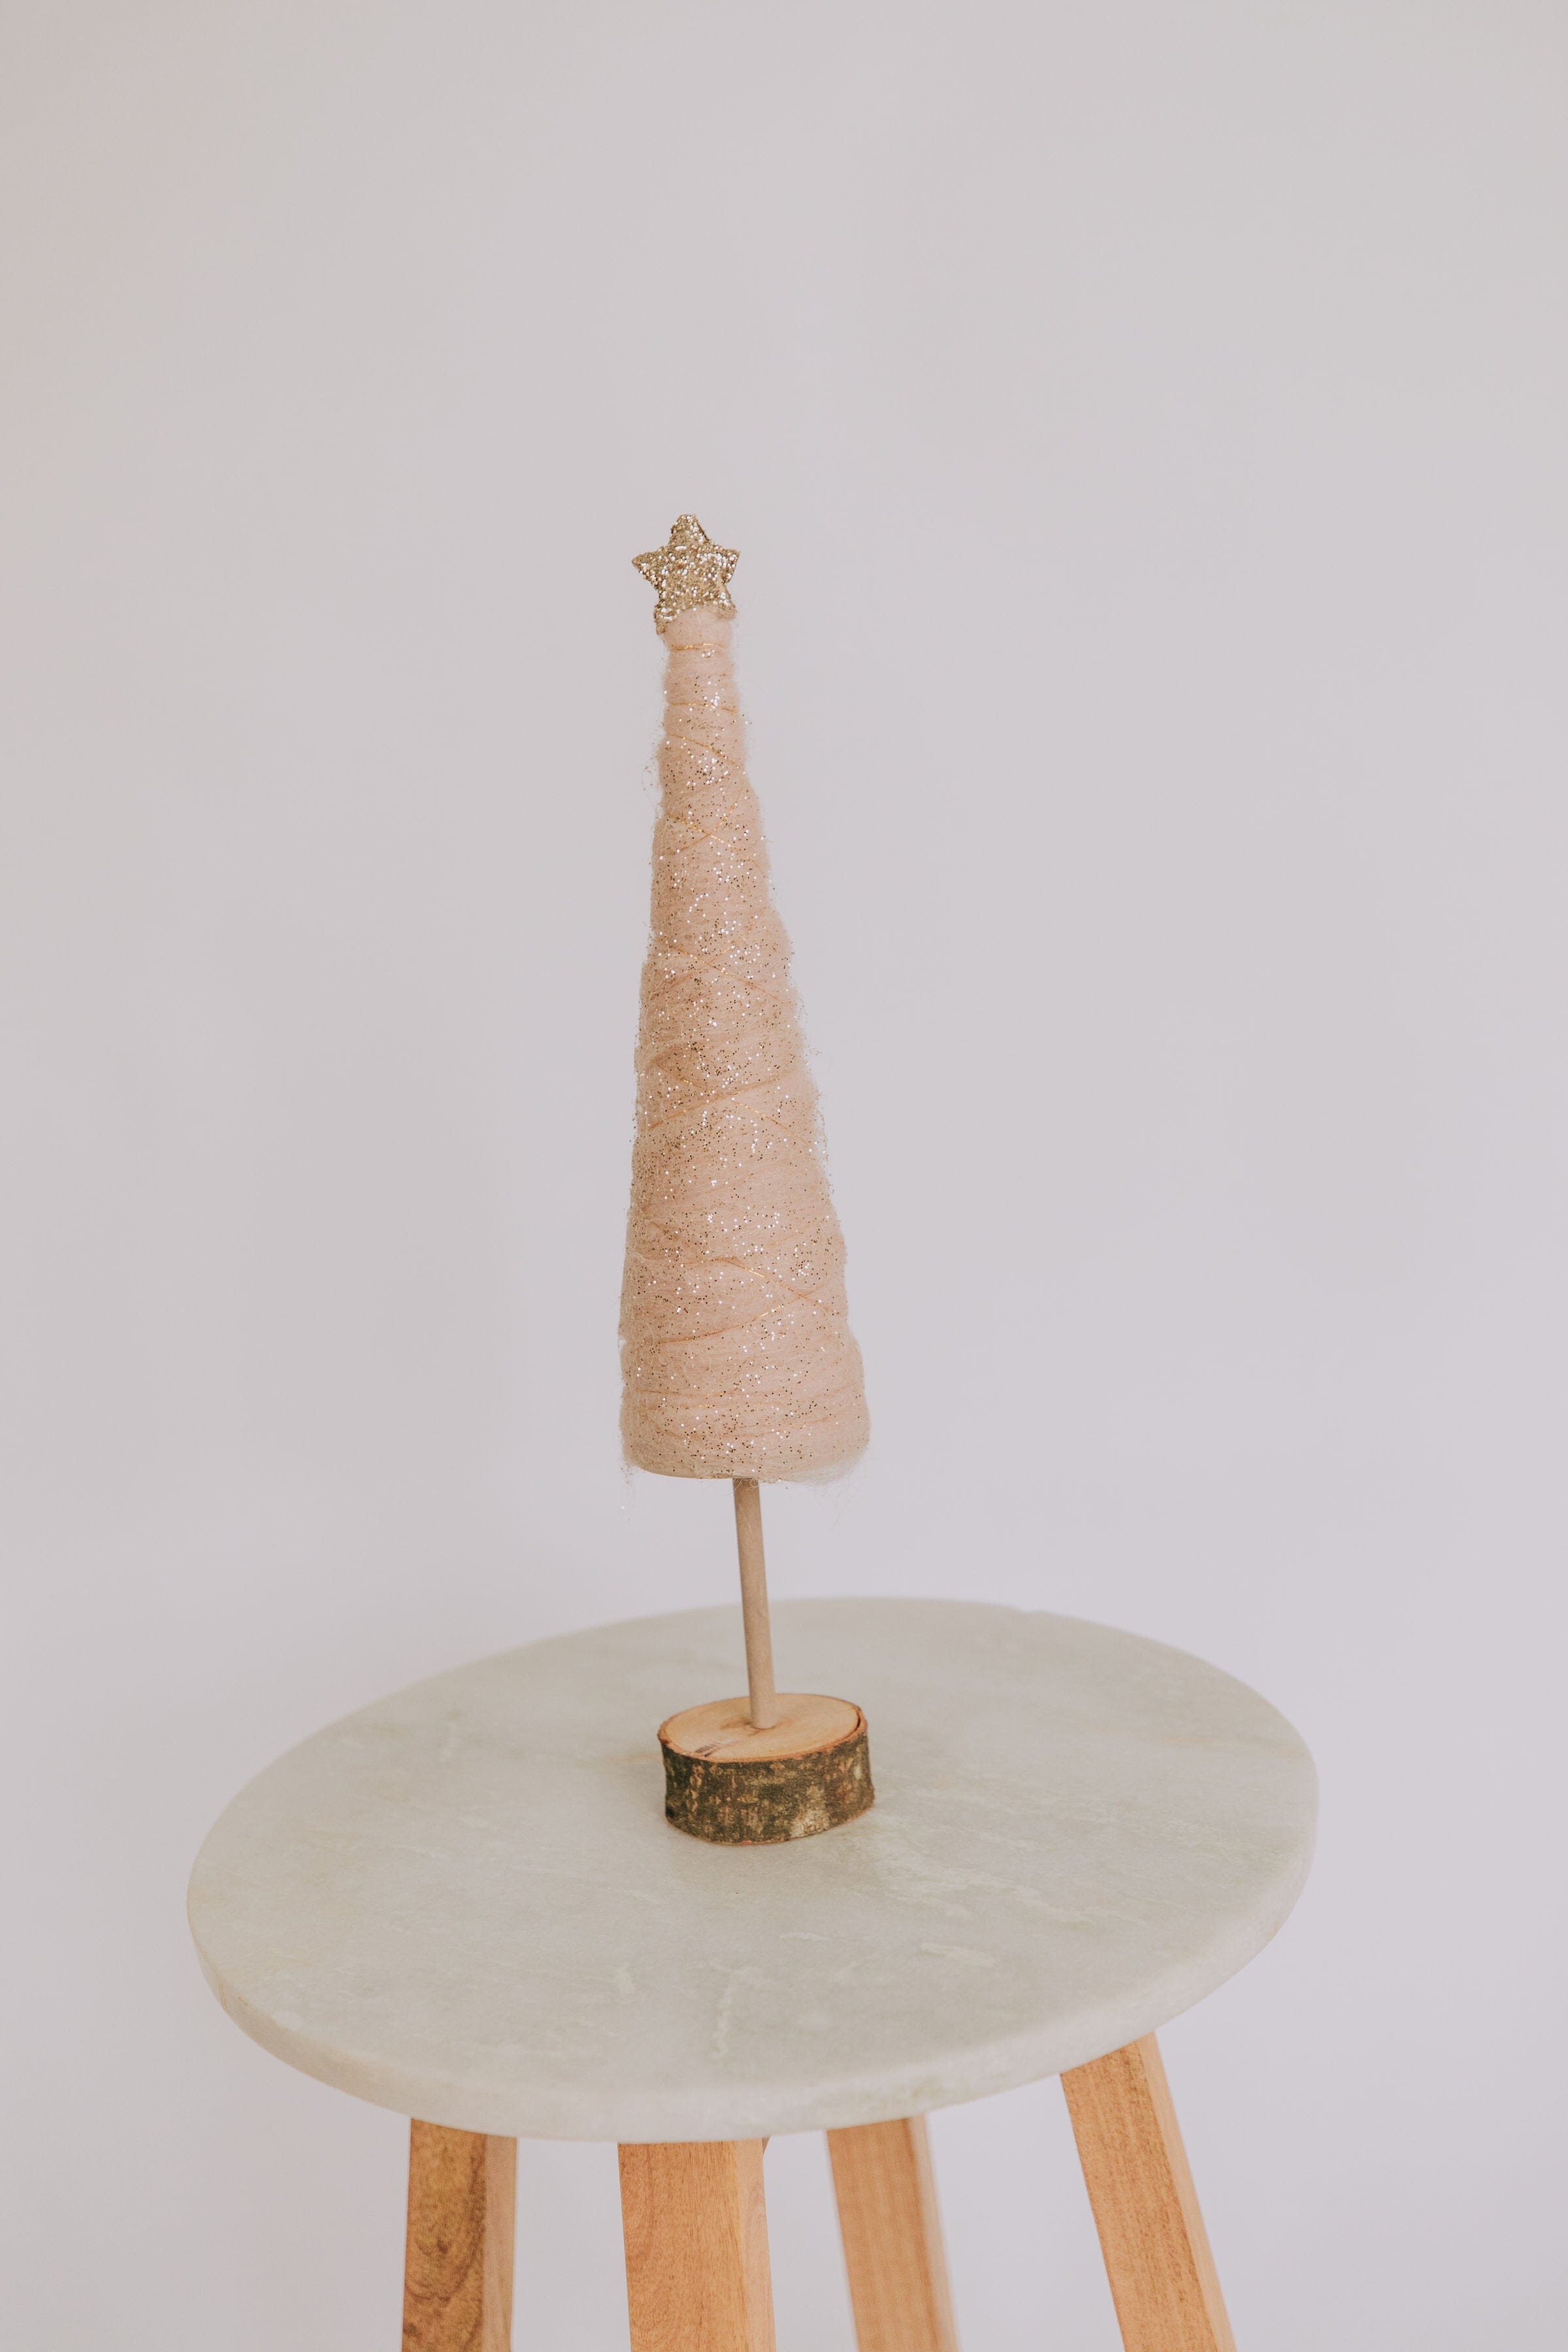 Wool Cone Tree w/ Glitter + Star